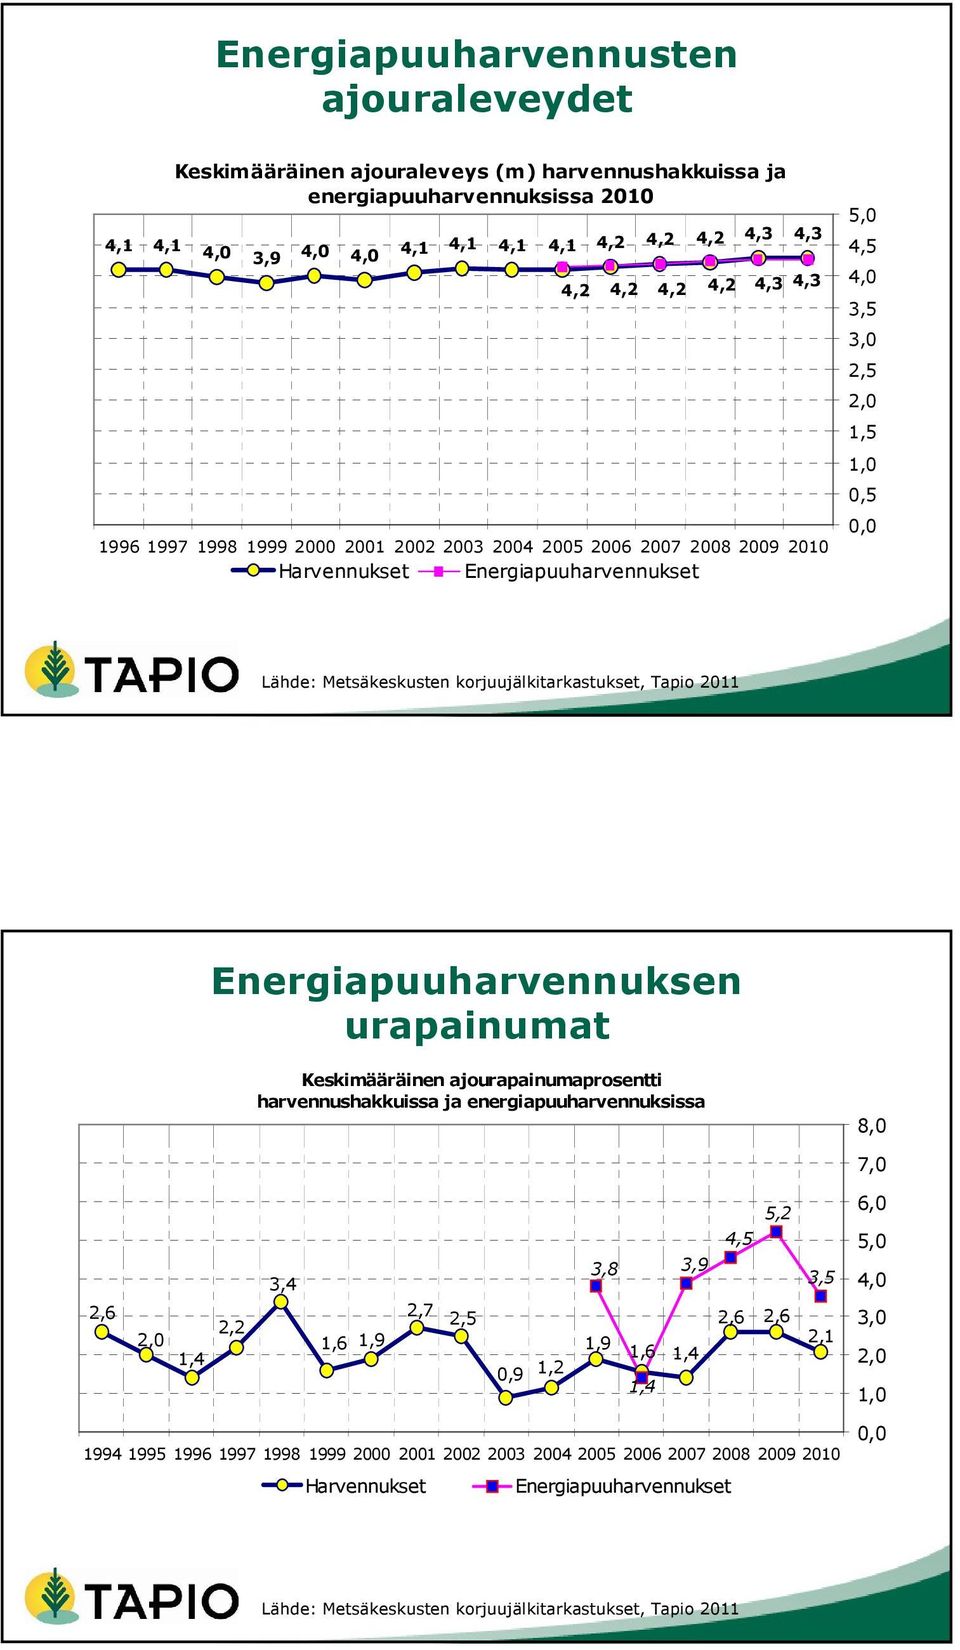 korjuujälkitarkastukset, Tapio 2011 Energiapuuharvennuksen urapainumat Keskimääräinen ajourapainumaprosentti harvennushakkuissa ja energiapuuharvennuksissa 8,0 7,0 2,6 2,0 1,4 2,2 3,4 1,6 1,9 2,7 2,5